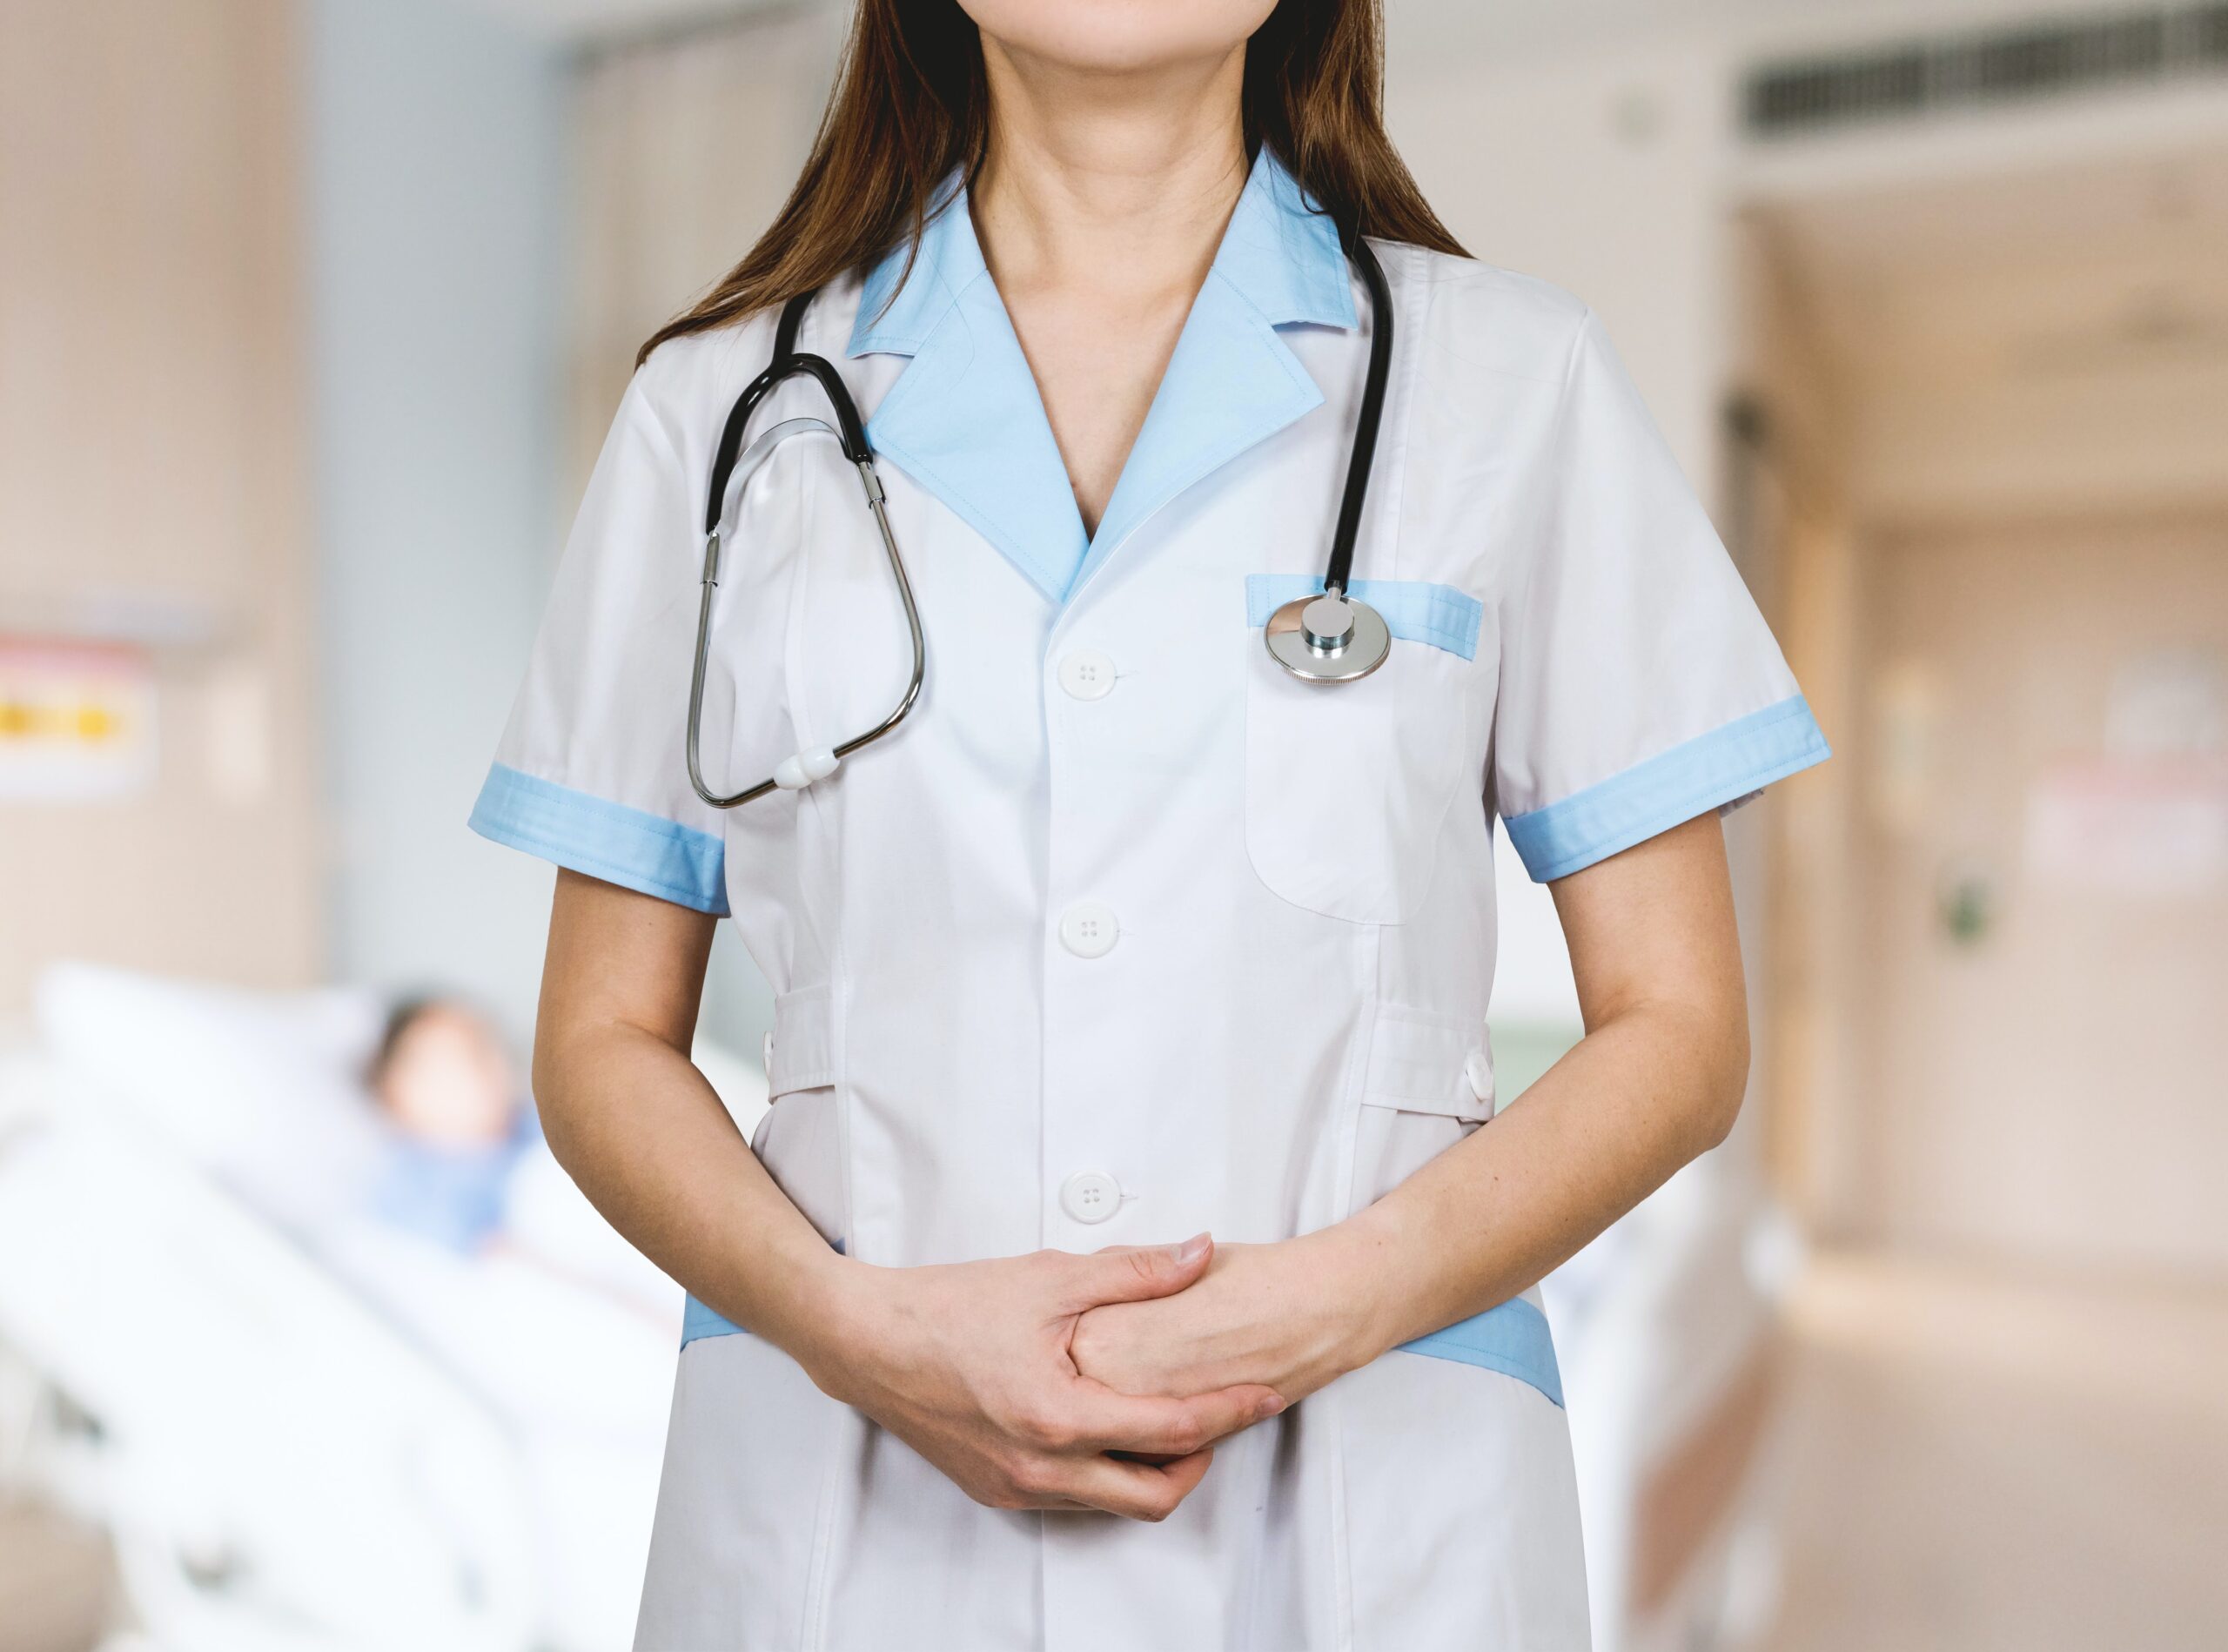 lorella,-infermiera:-“ben-venga-la-libera-professione-anche-per-i-dipendenti-non-medici-del-ssn”.